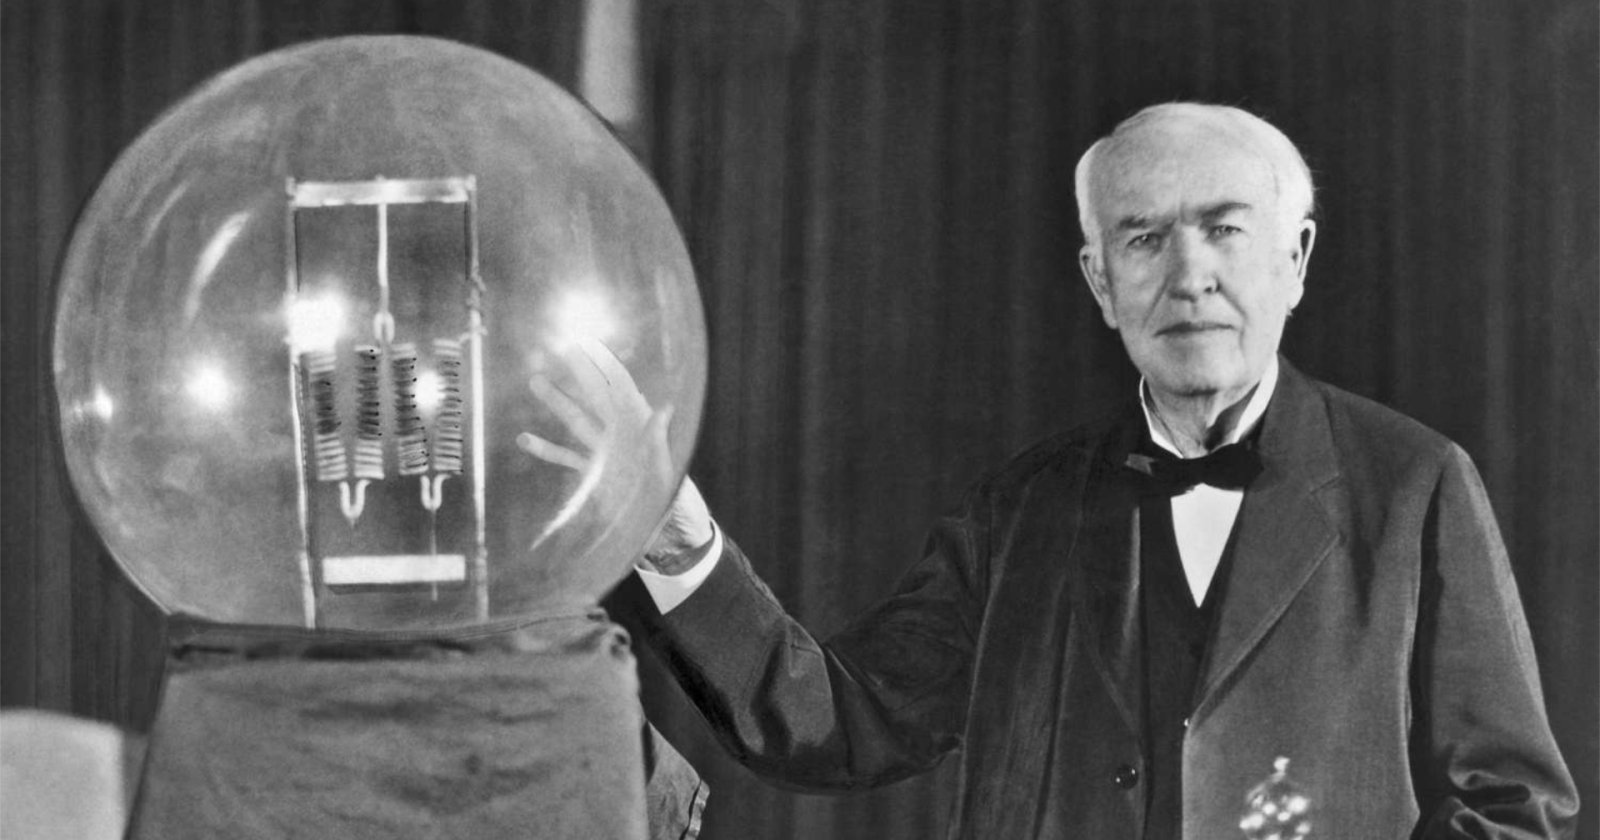 โทมัส อัลวา เอดิสัน ไม่ได้ประดิษฐ์หลอดไฟสำเร็จเป็นคนแรก แต่เป็นคนจดสิทธิบัตร